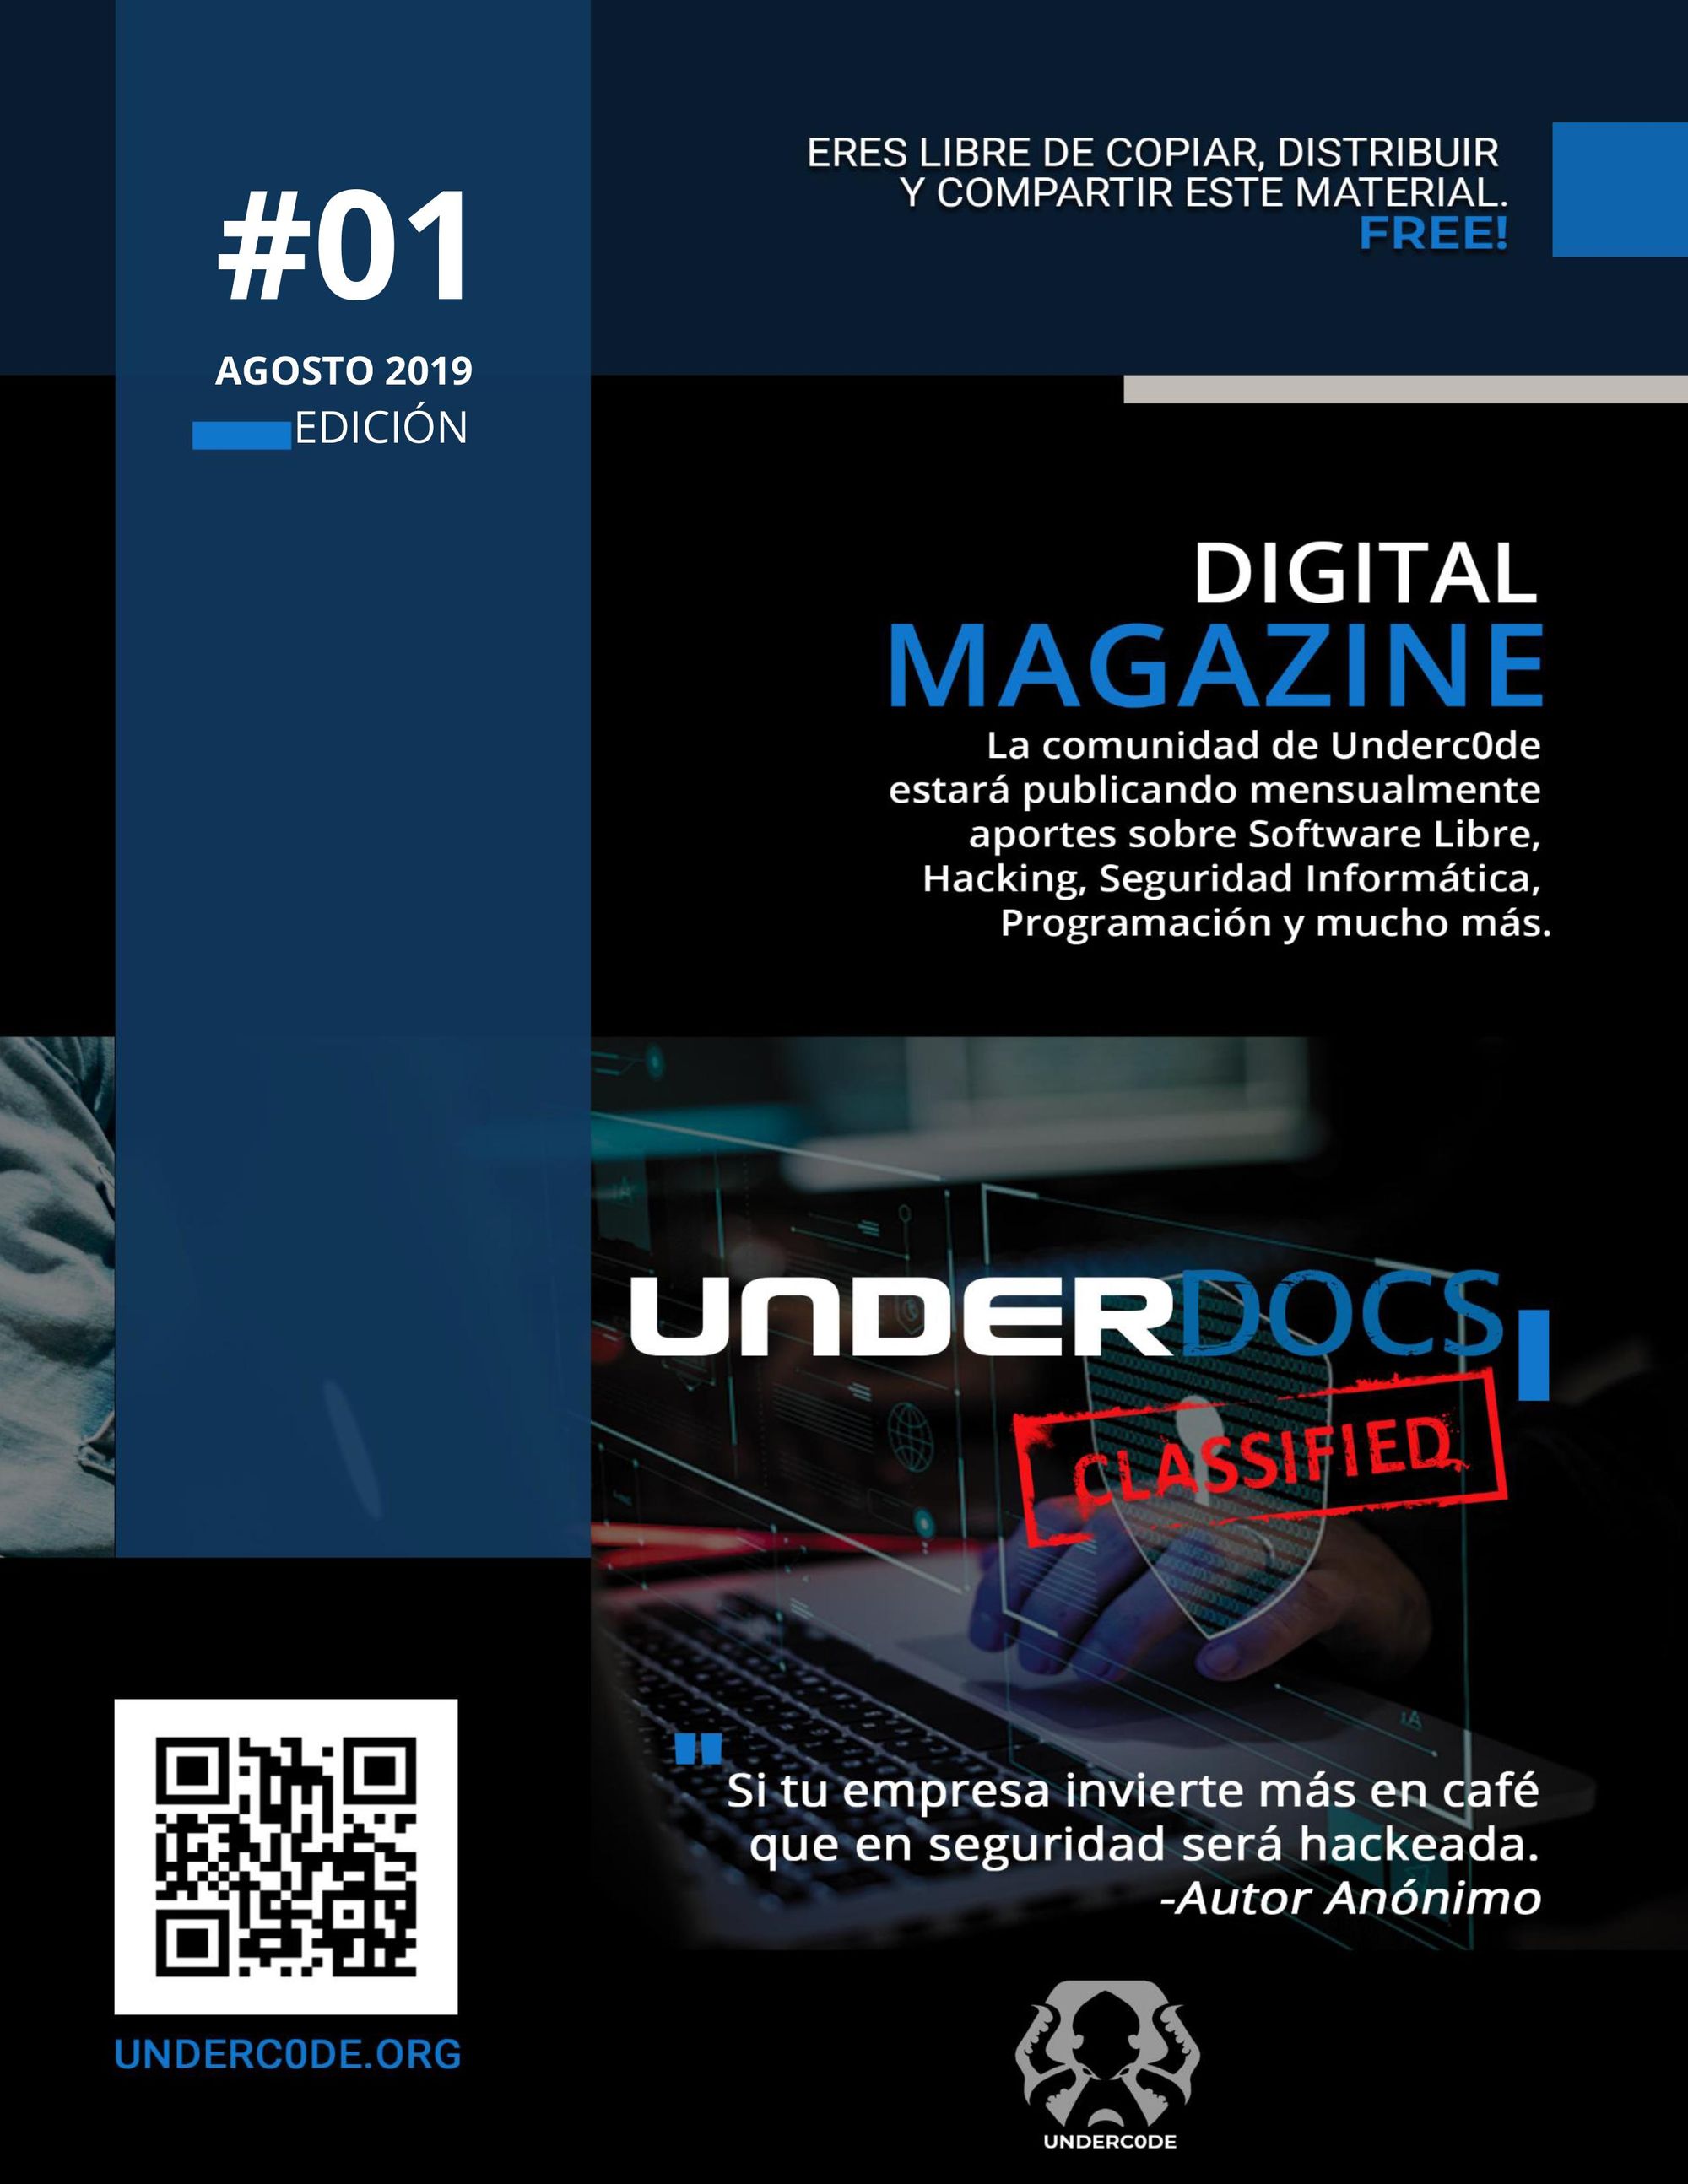 UnderDOCS: La nueva revista digital y gratuita de Underc0de